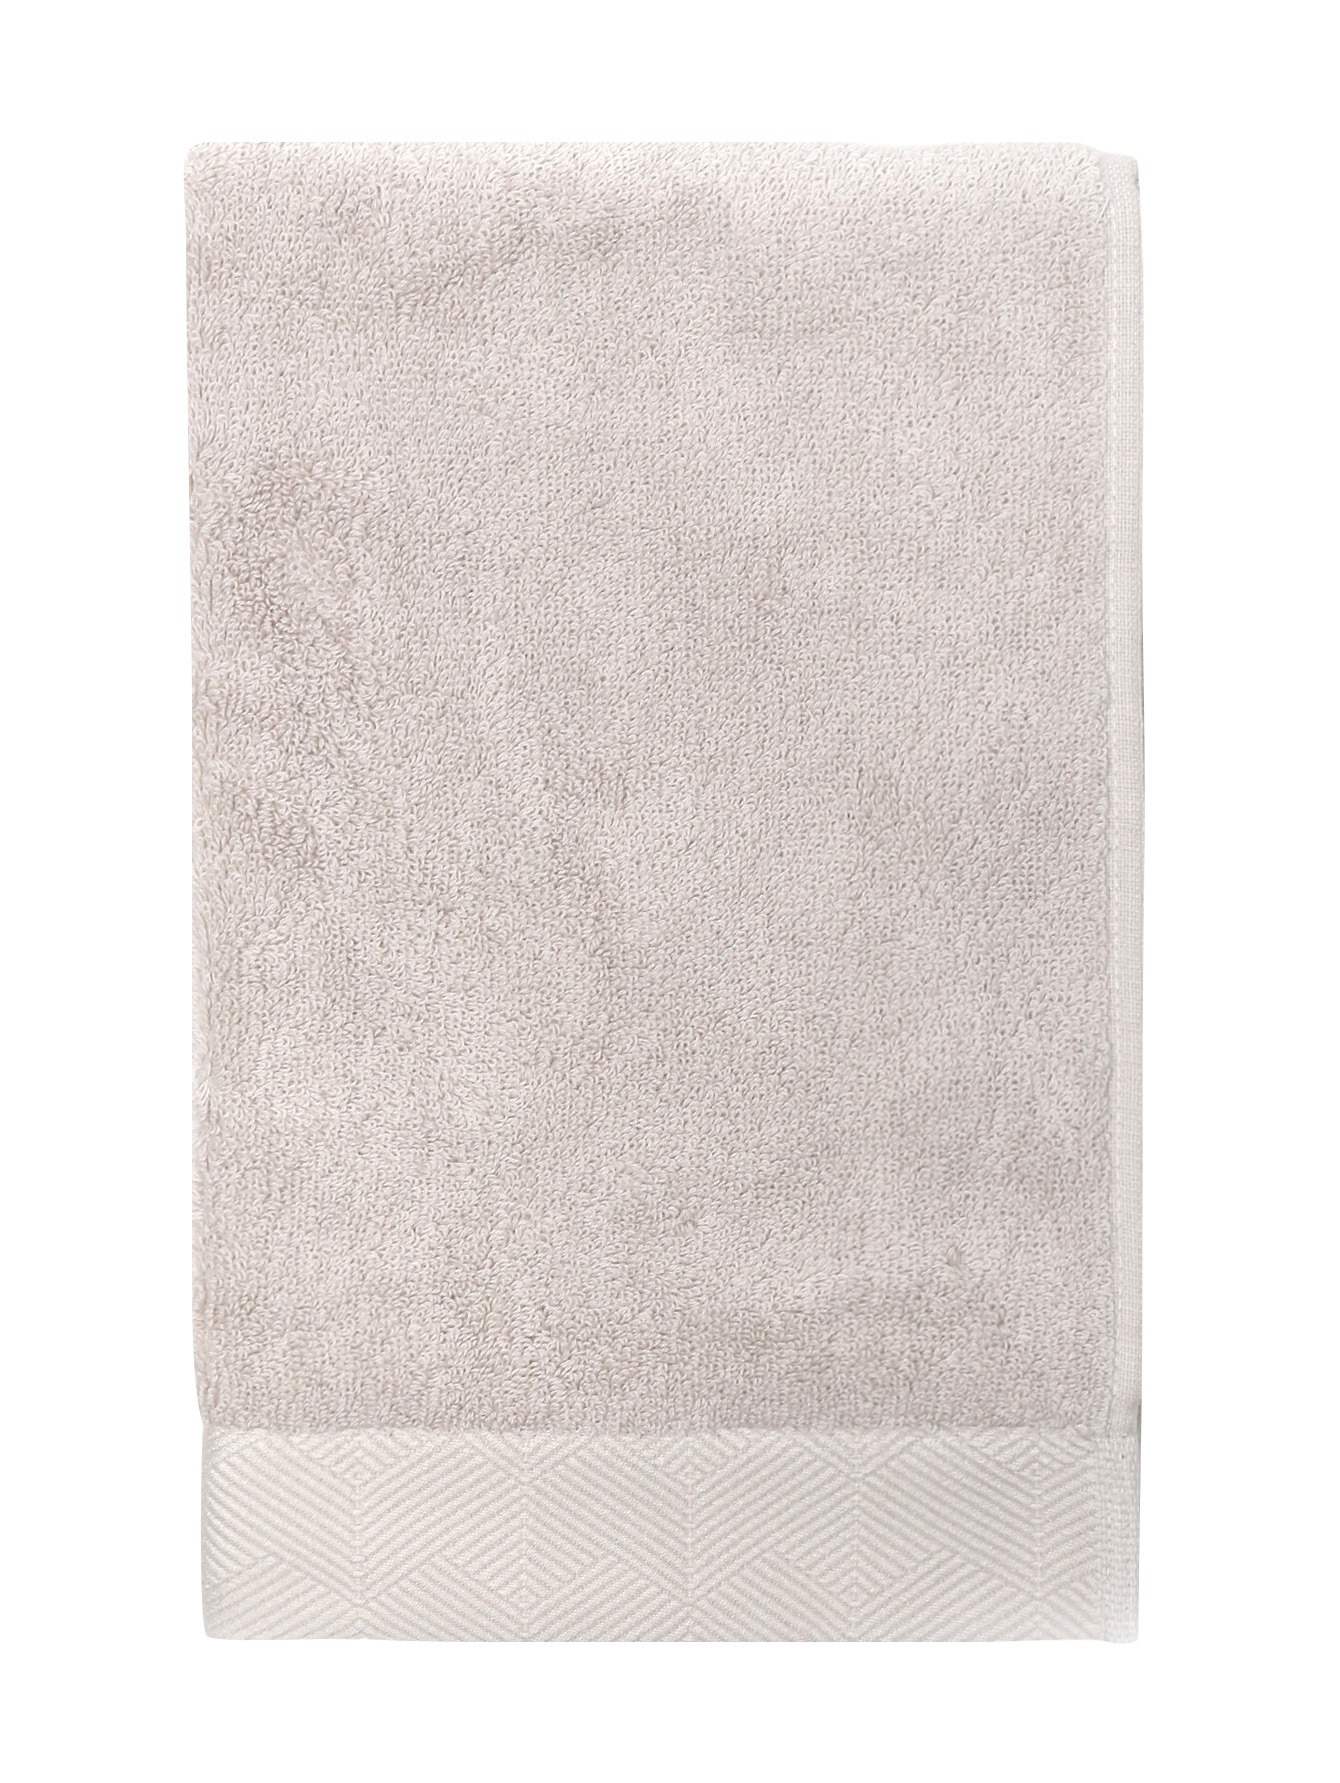 Полотенце из хлопковой махровой ткани с фактурным орнаментом по канту - Обтравка1